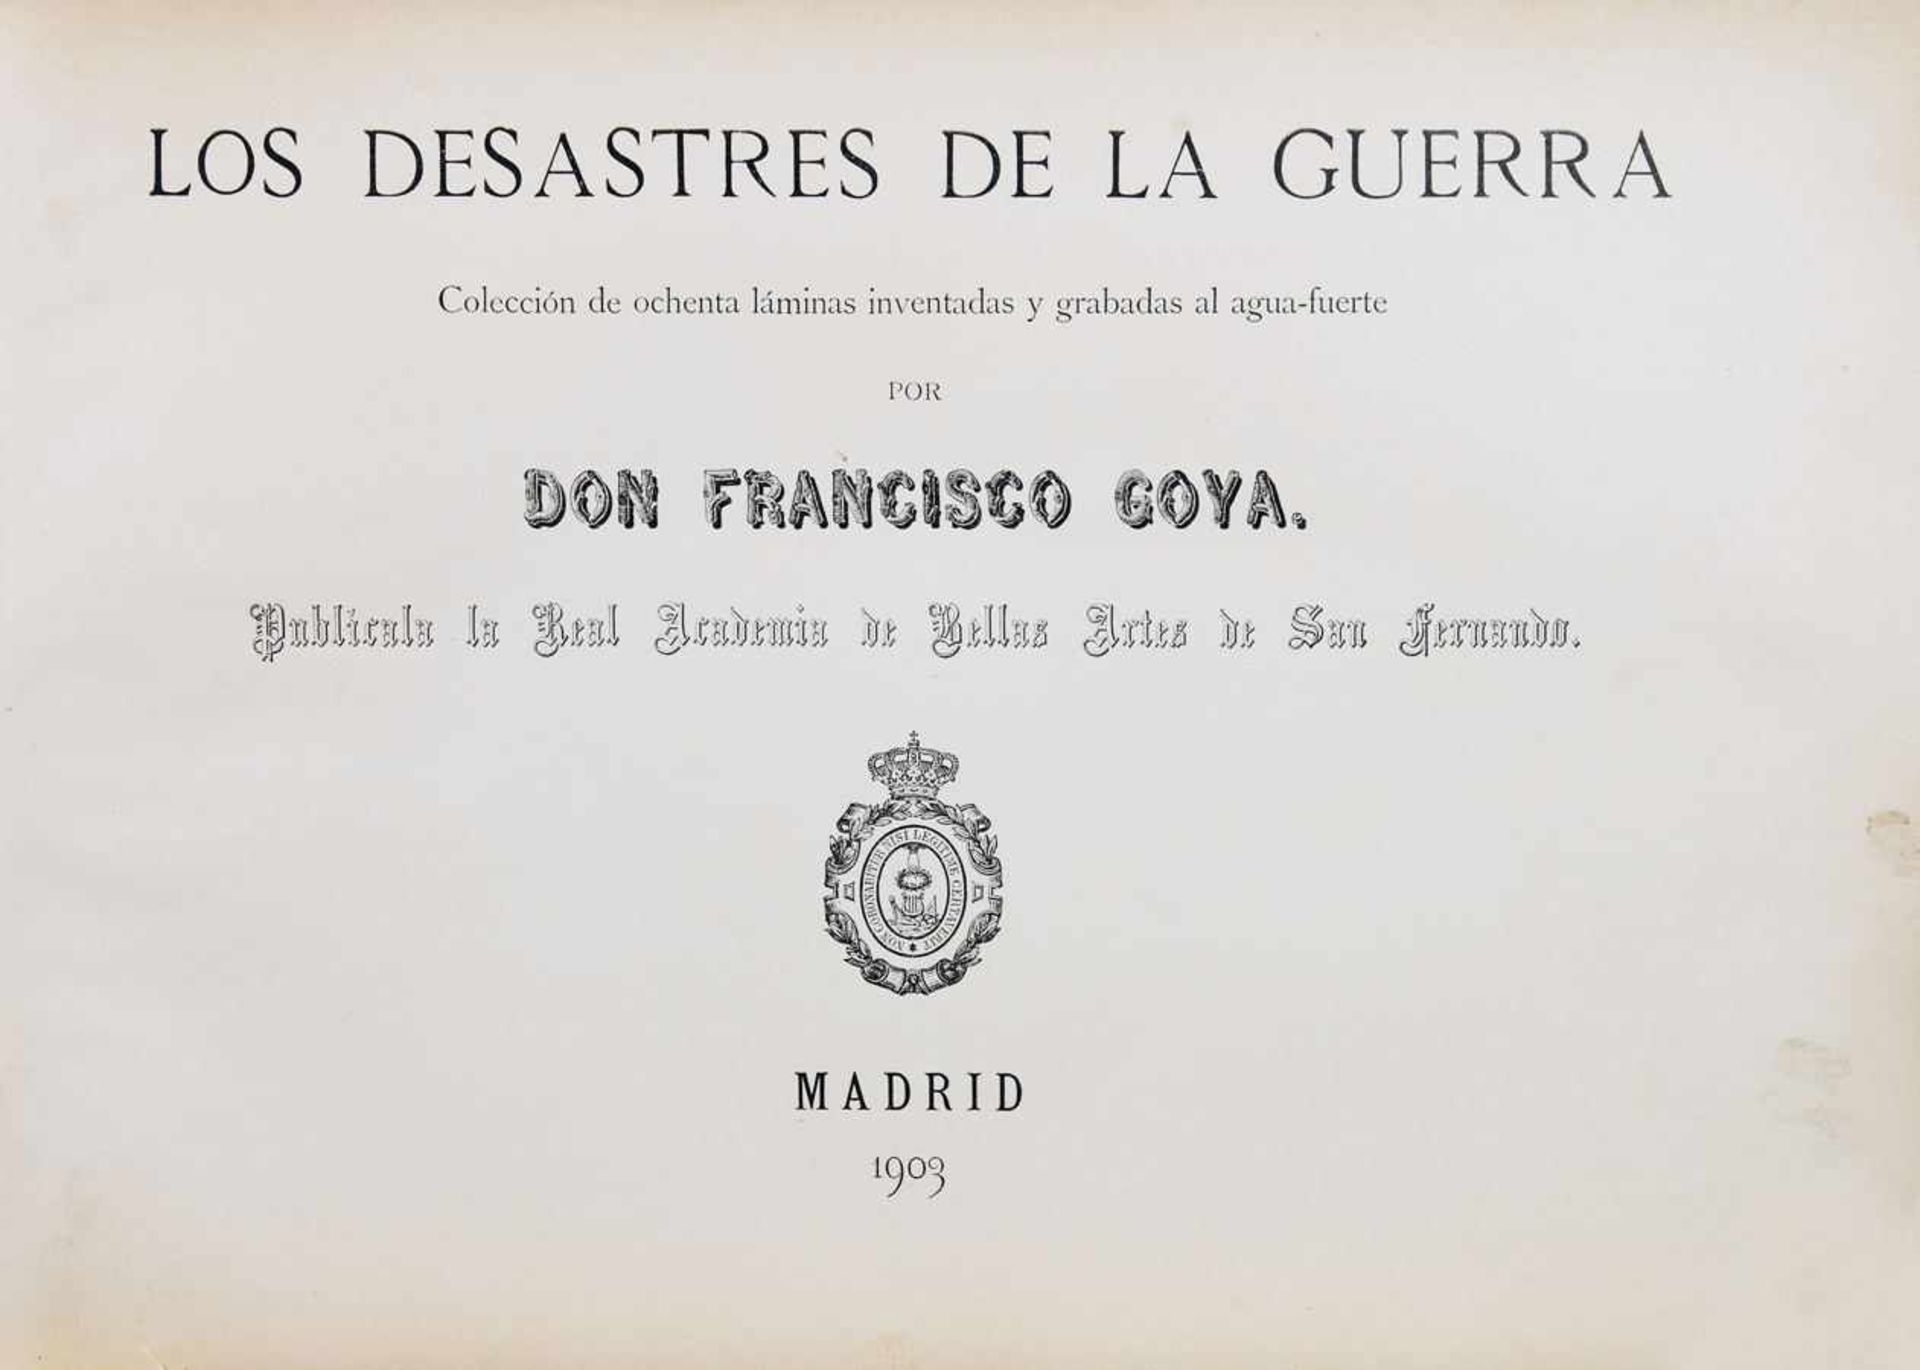 Francisco de Goya y Lucientes. Los desastres de la guerra. 80 Aquantintaradierungen. 1863/1903. 24 : - Image 5 of 5